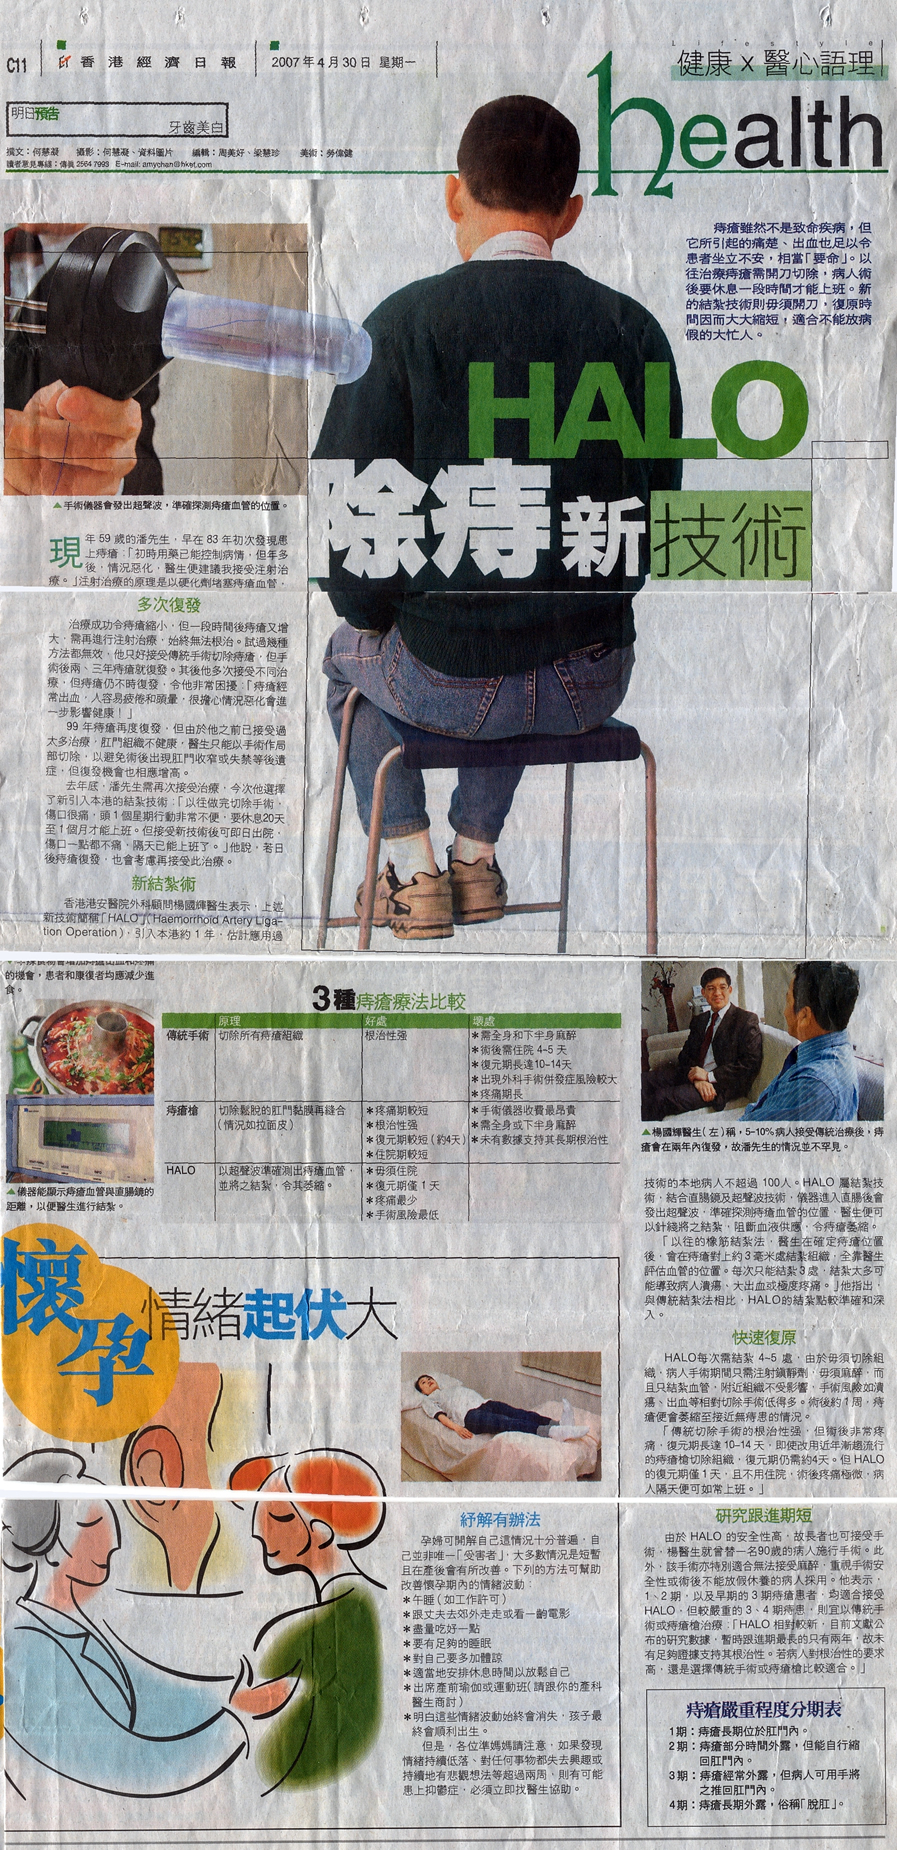 hong kong haemorrhoid centre newspaper5